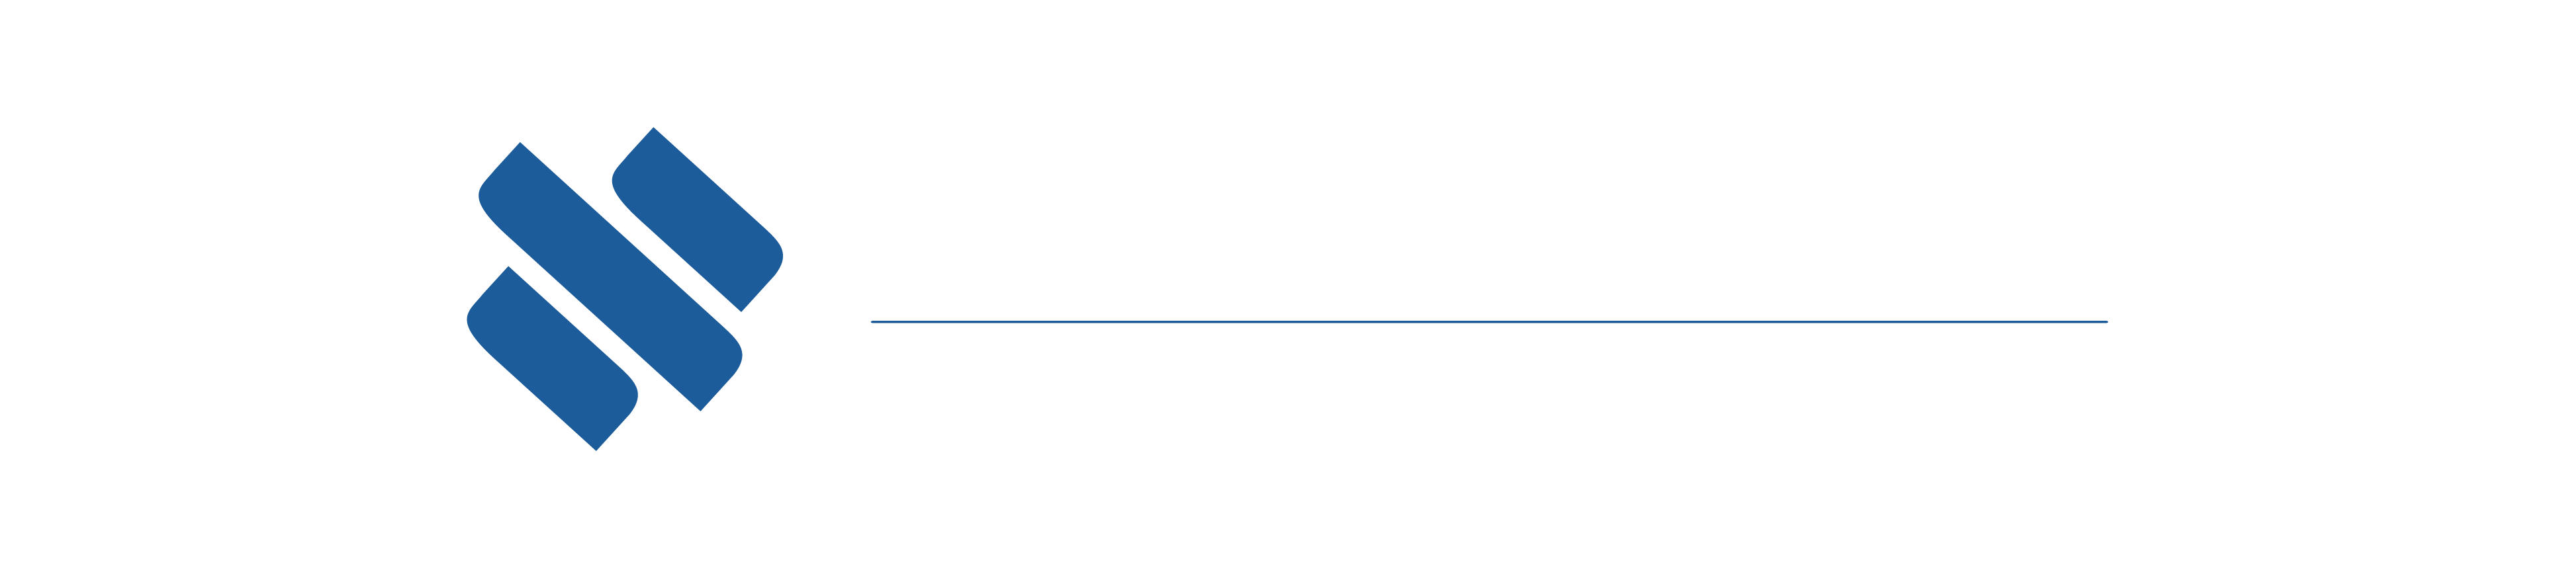 Maxinvest